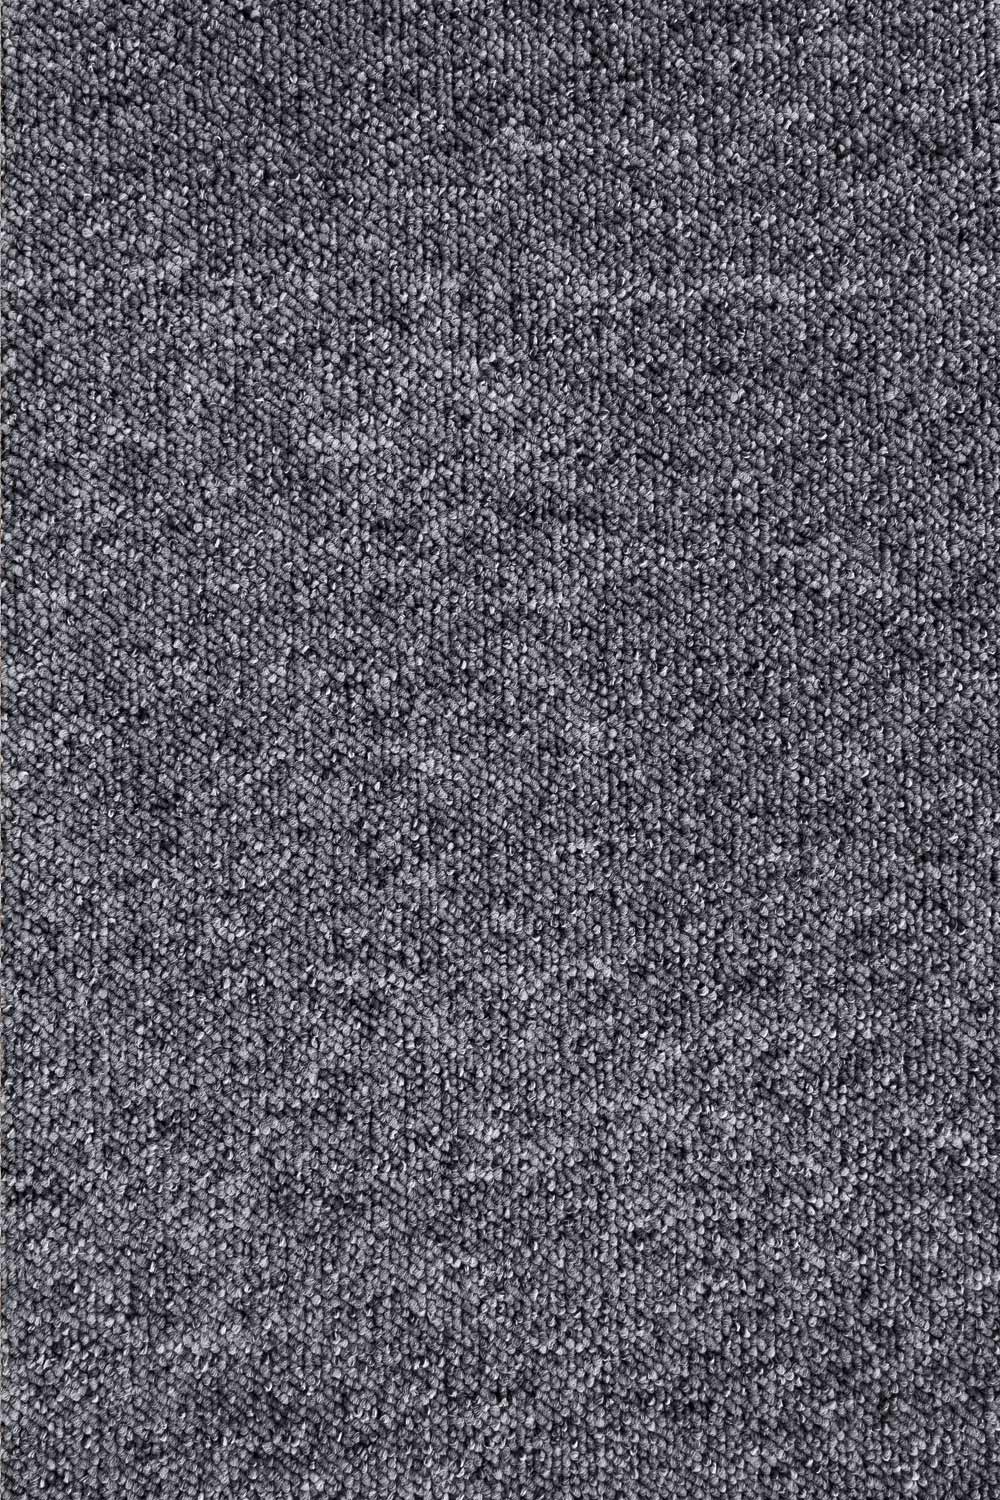 Metrážny koberec ROBSON 9628 400 cm